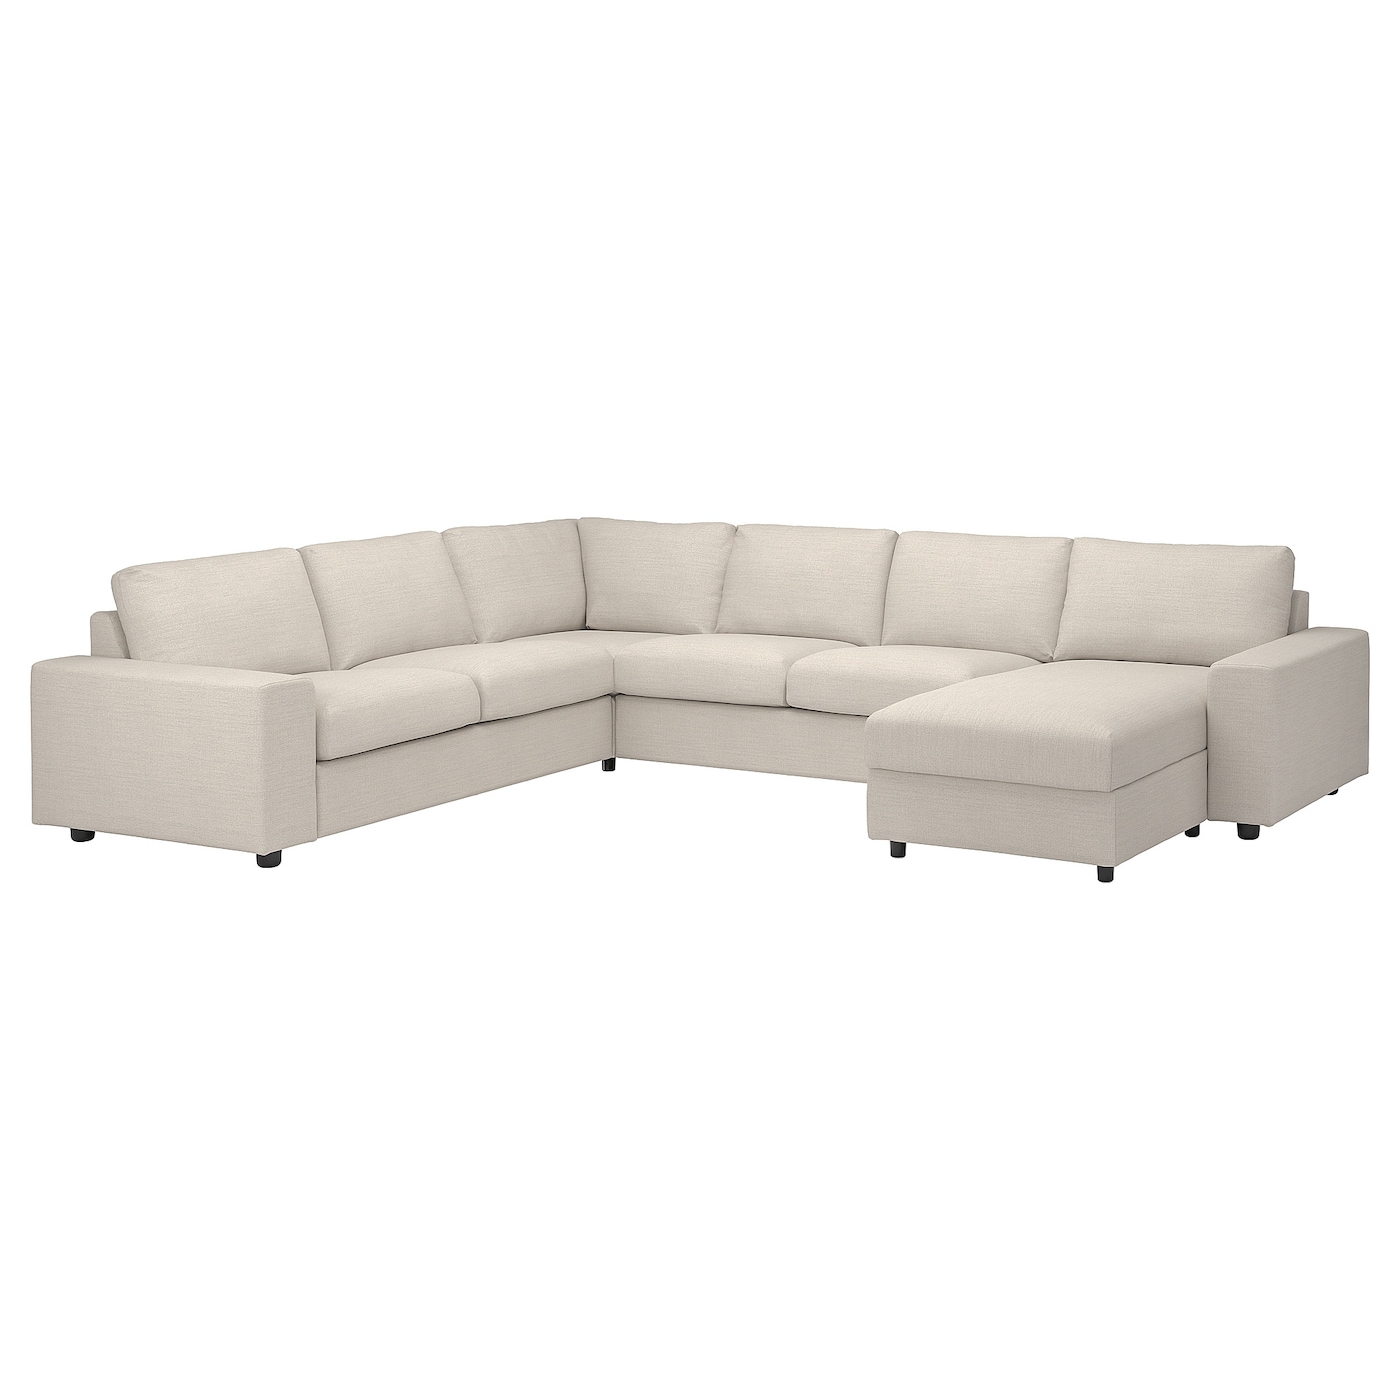 ВИМЛЕ Диван угловой, 5-местный. диван+диван, с широкими подлокотниками/Гуннаред бежевый VIMLE IKEA диван угловой bizzotto 0662861